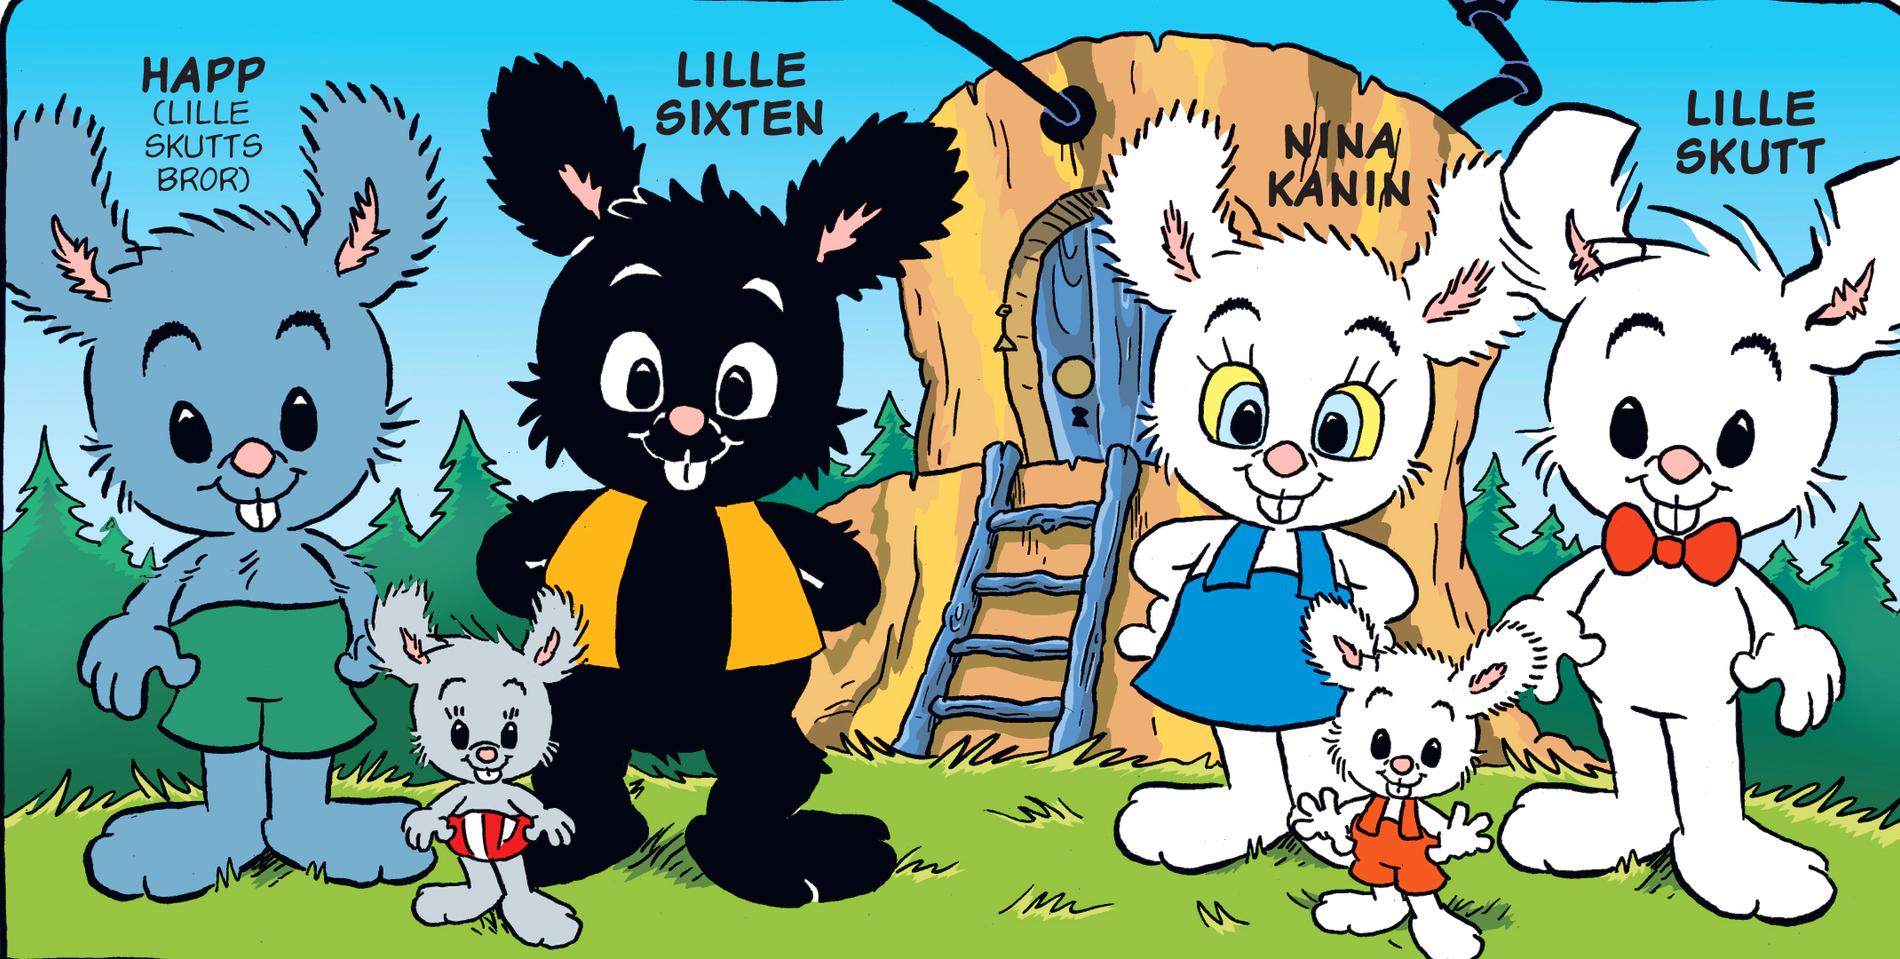 Till vänster: Lille Skutts bror Happ och hans partner Lille Sixten, samt deras dotter Suddan.